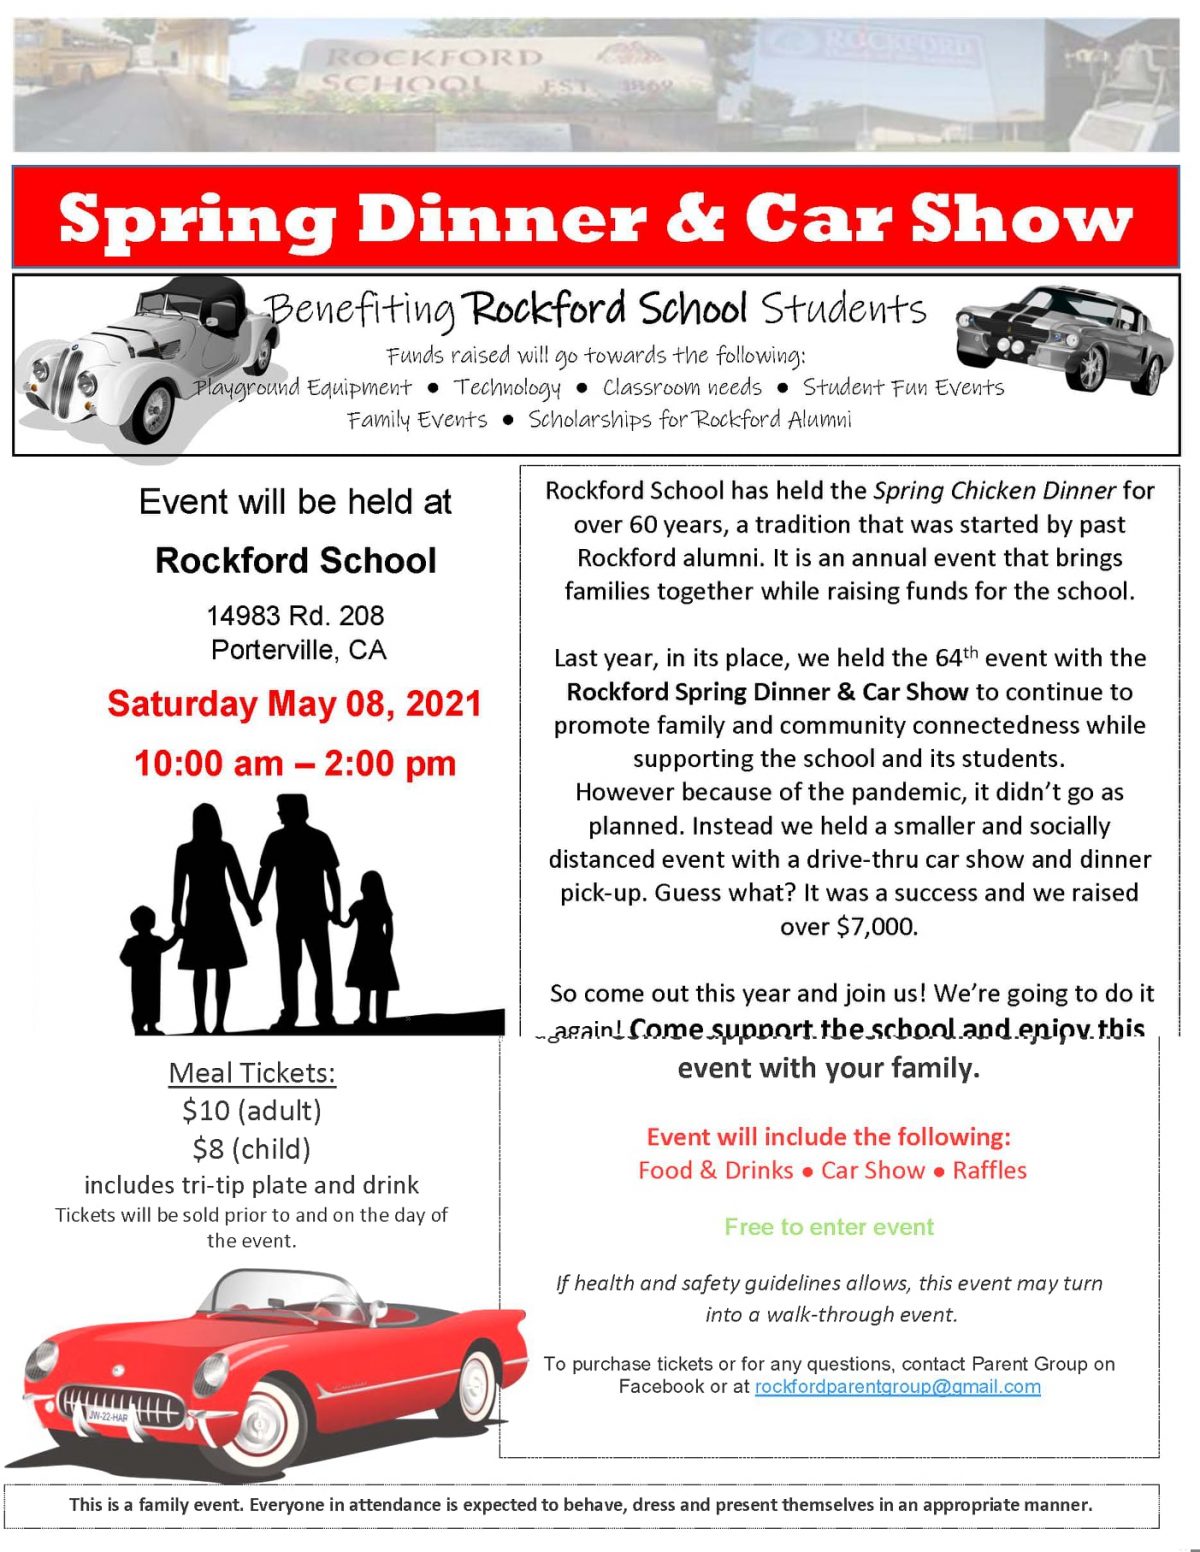 Rockford School Spring Dinner & Car Show